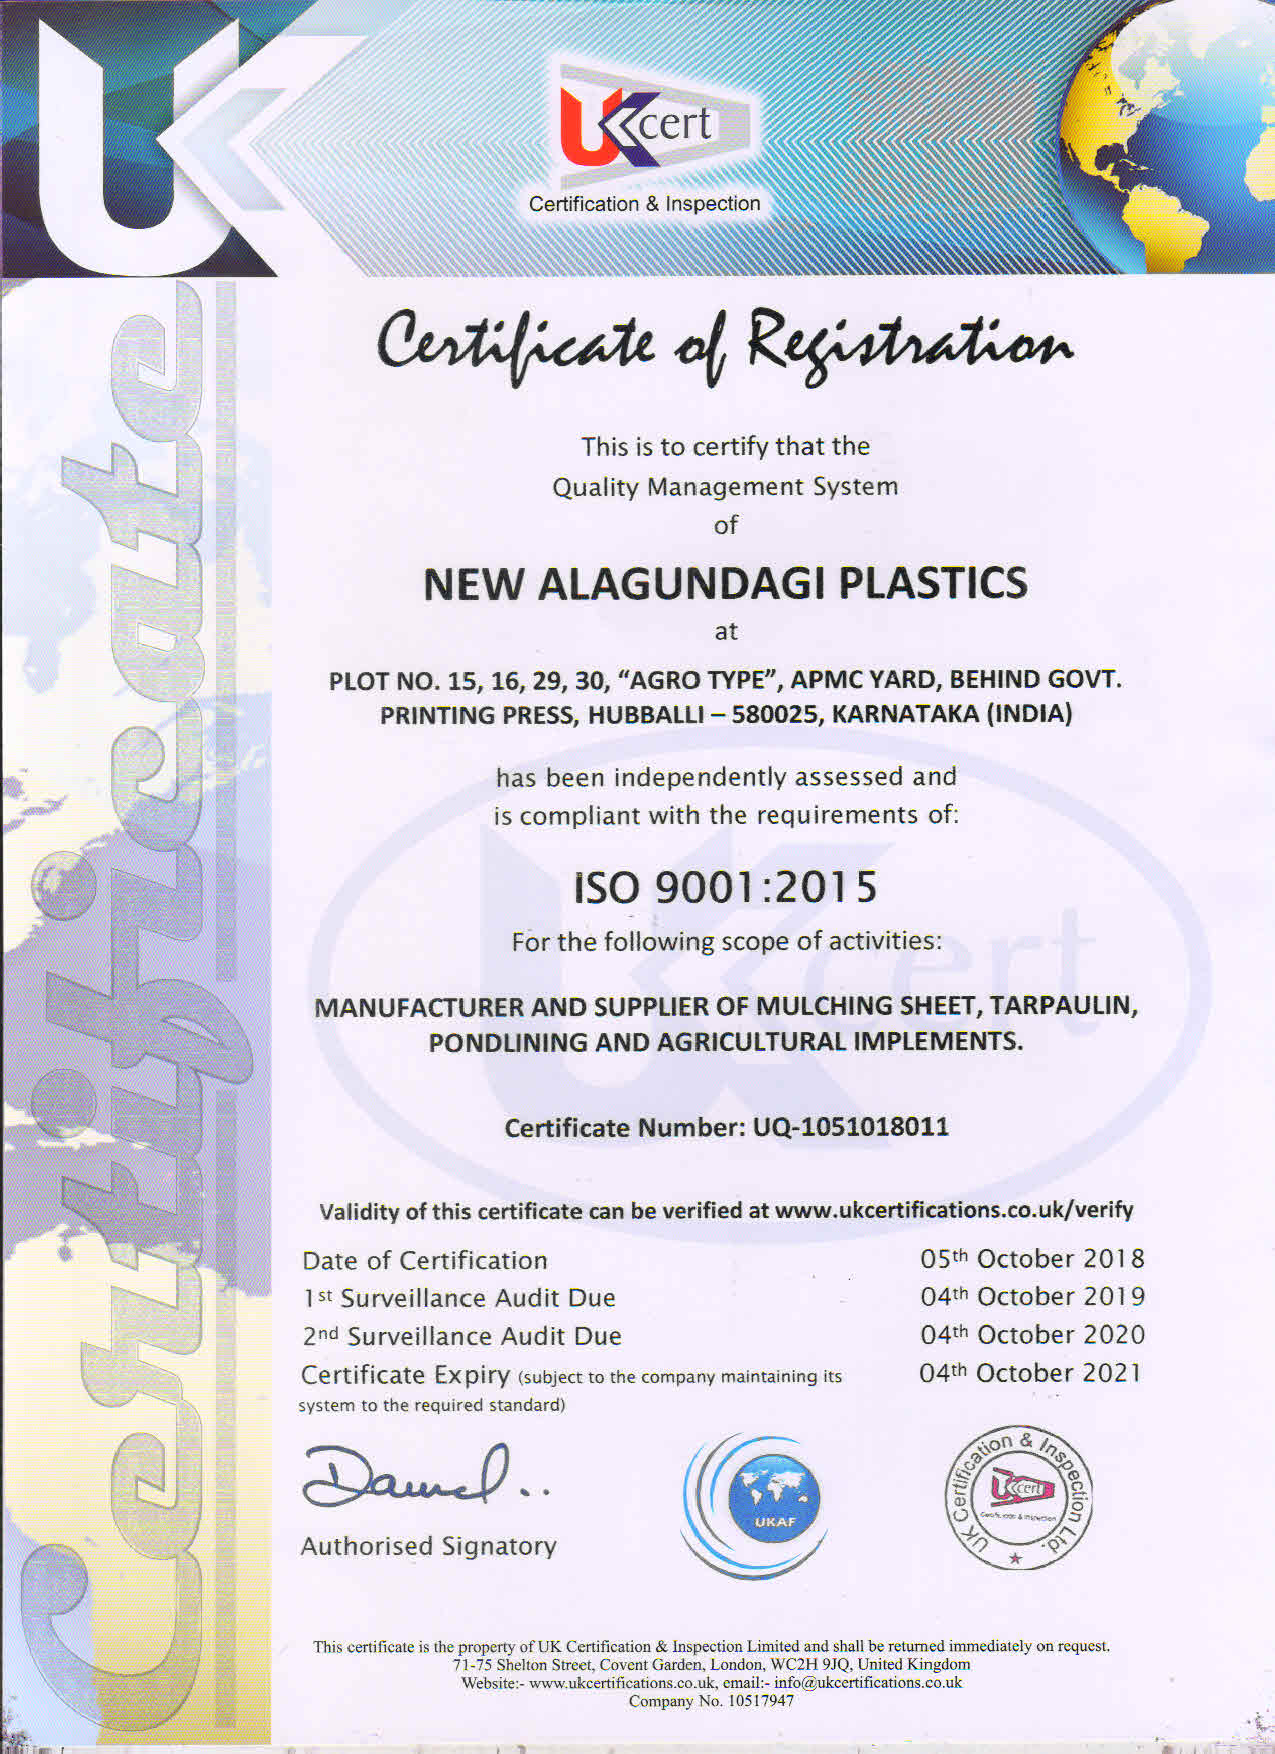 New Alagundagi Plastic Certificate of Registration